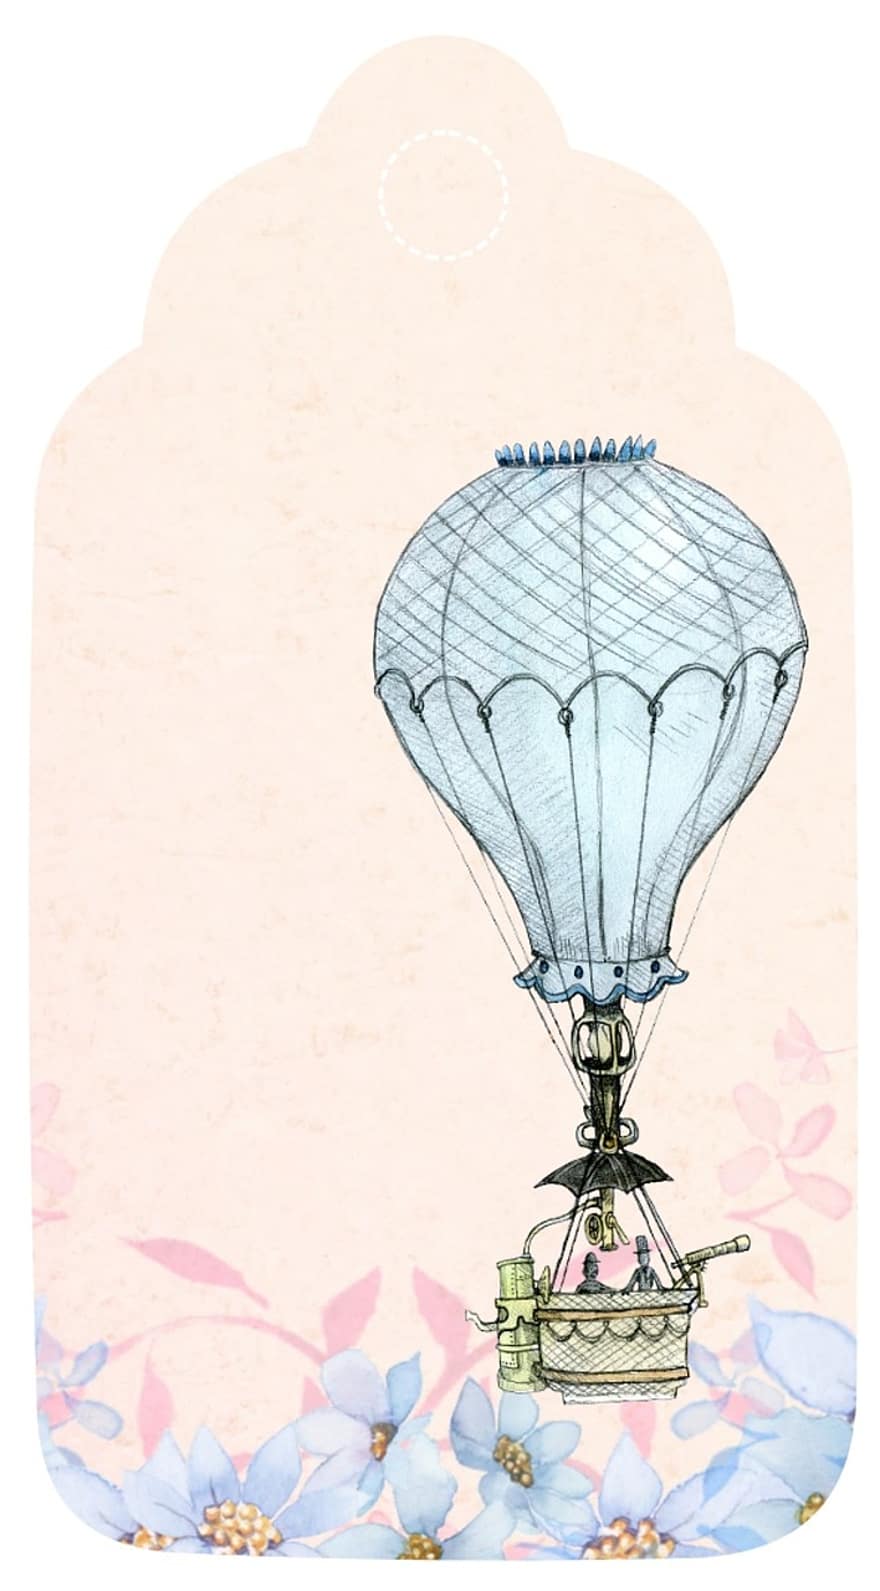 hőlégballon, címke, romantikus, vendégkönyv, rózsaszín, kék, madár, szüret, üdvözlet, dekoráció, kártya